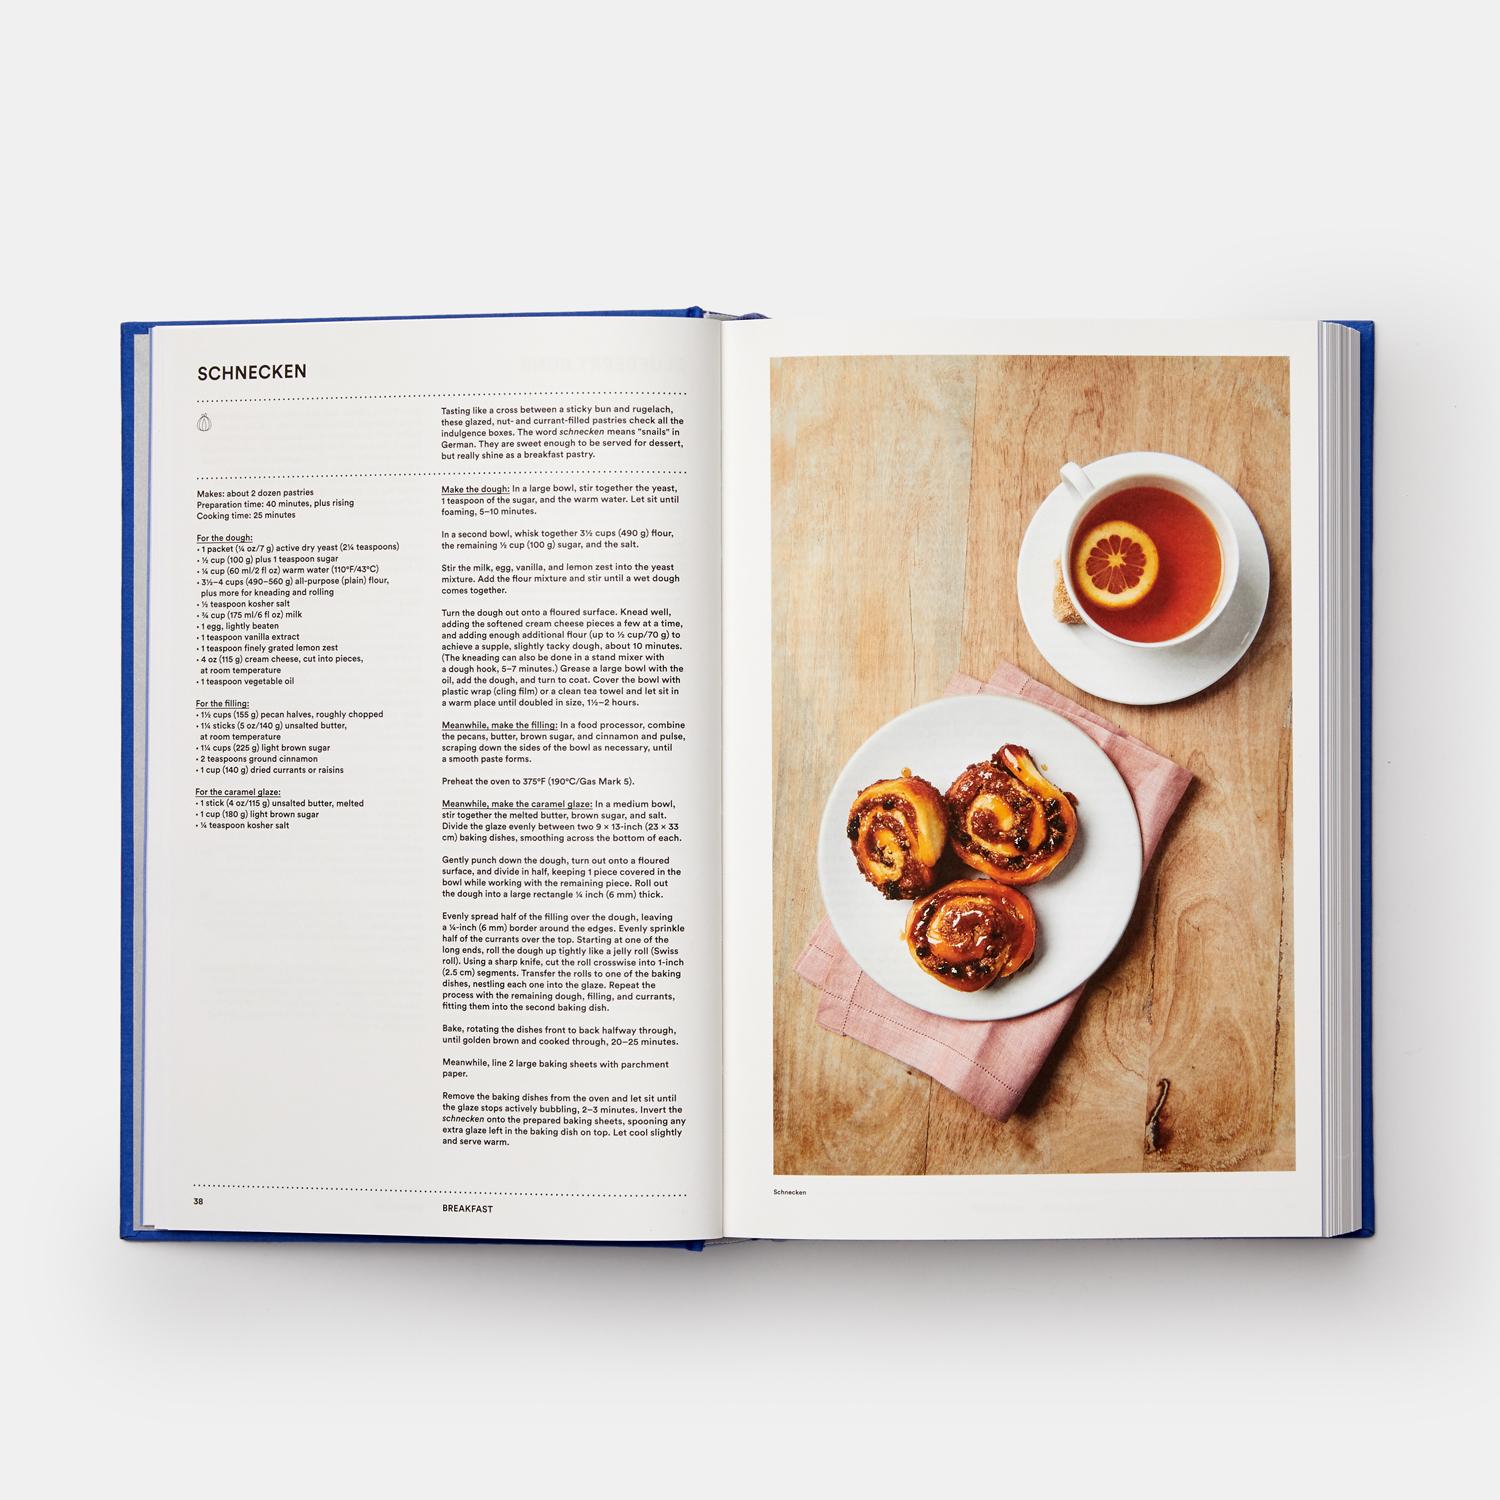 Un riche trésor de la cuisine juive mondiale contemporaine, avec des centaines d'histoires et de recettes pour les cuisiniers du monde entier

Le livre de cuisine juif est une célébration inspirante de la diversité et de l'ampleur de cette vénérable